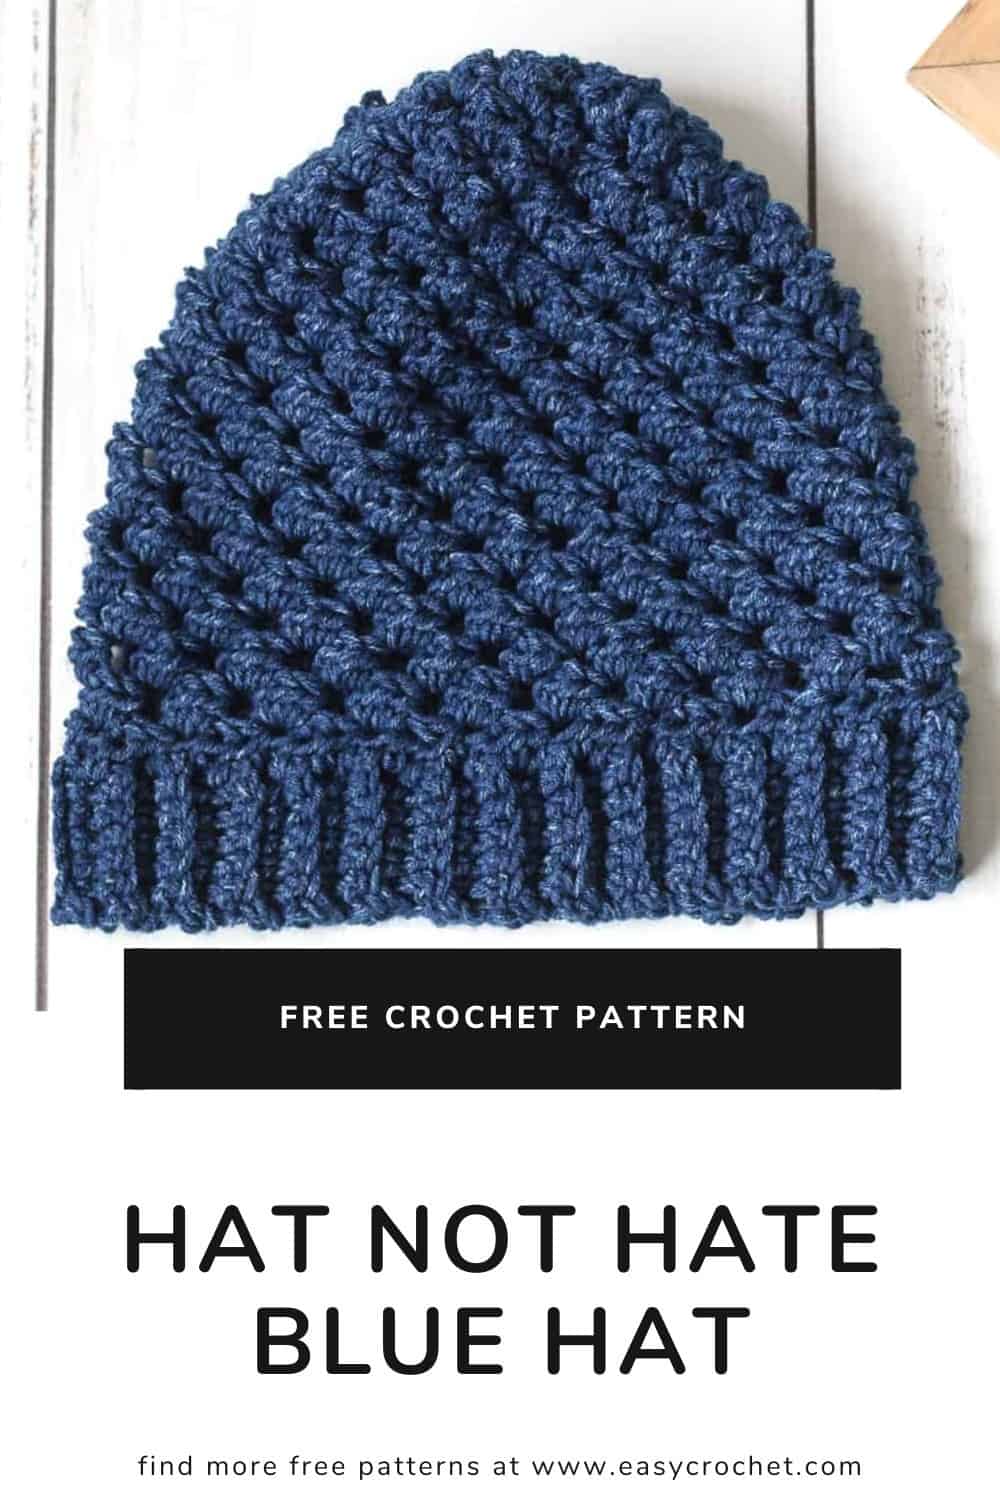 Free Blue Hat Crochet Pattern for Lion Brand Yarn's Hat not Hate program. #hatnothate via @easycrochetcom